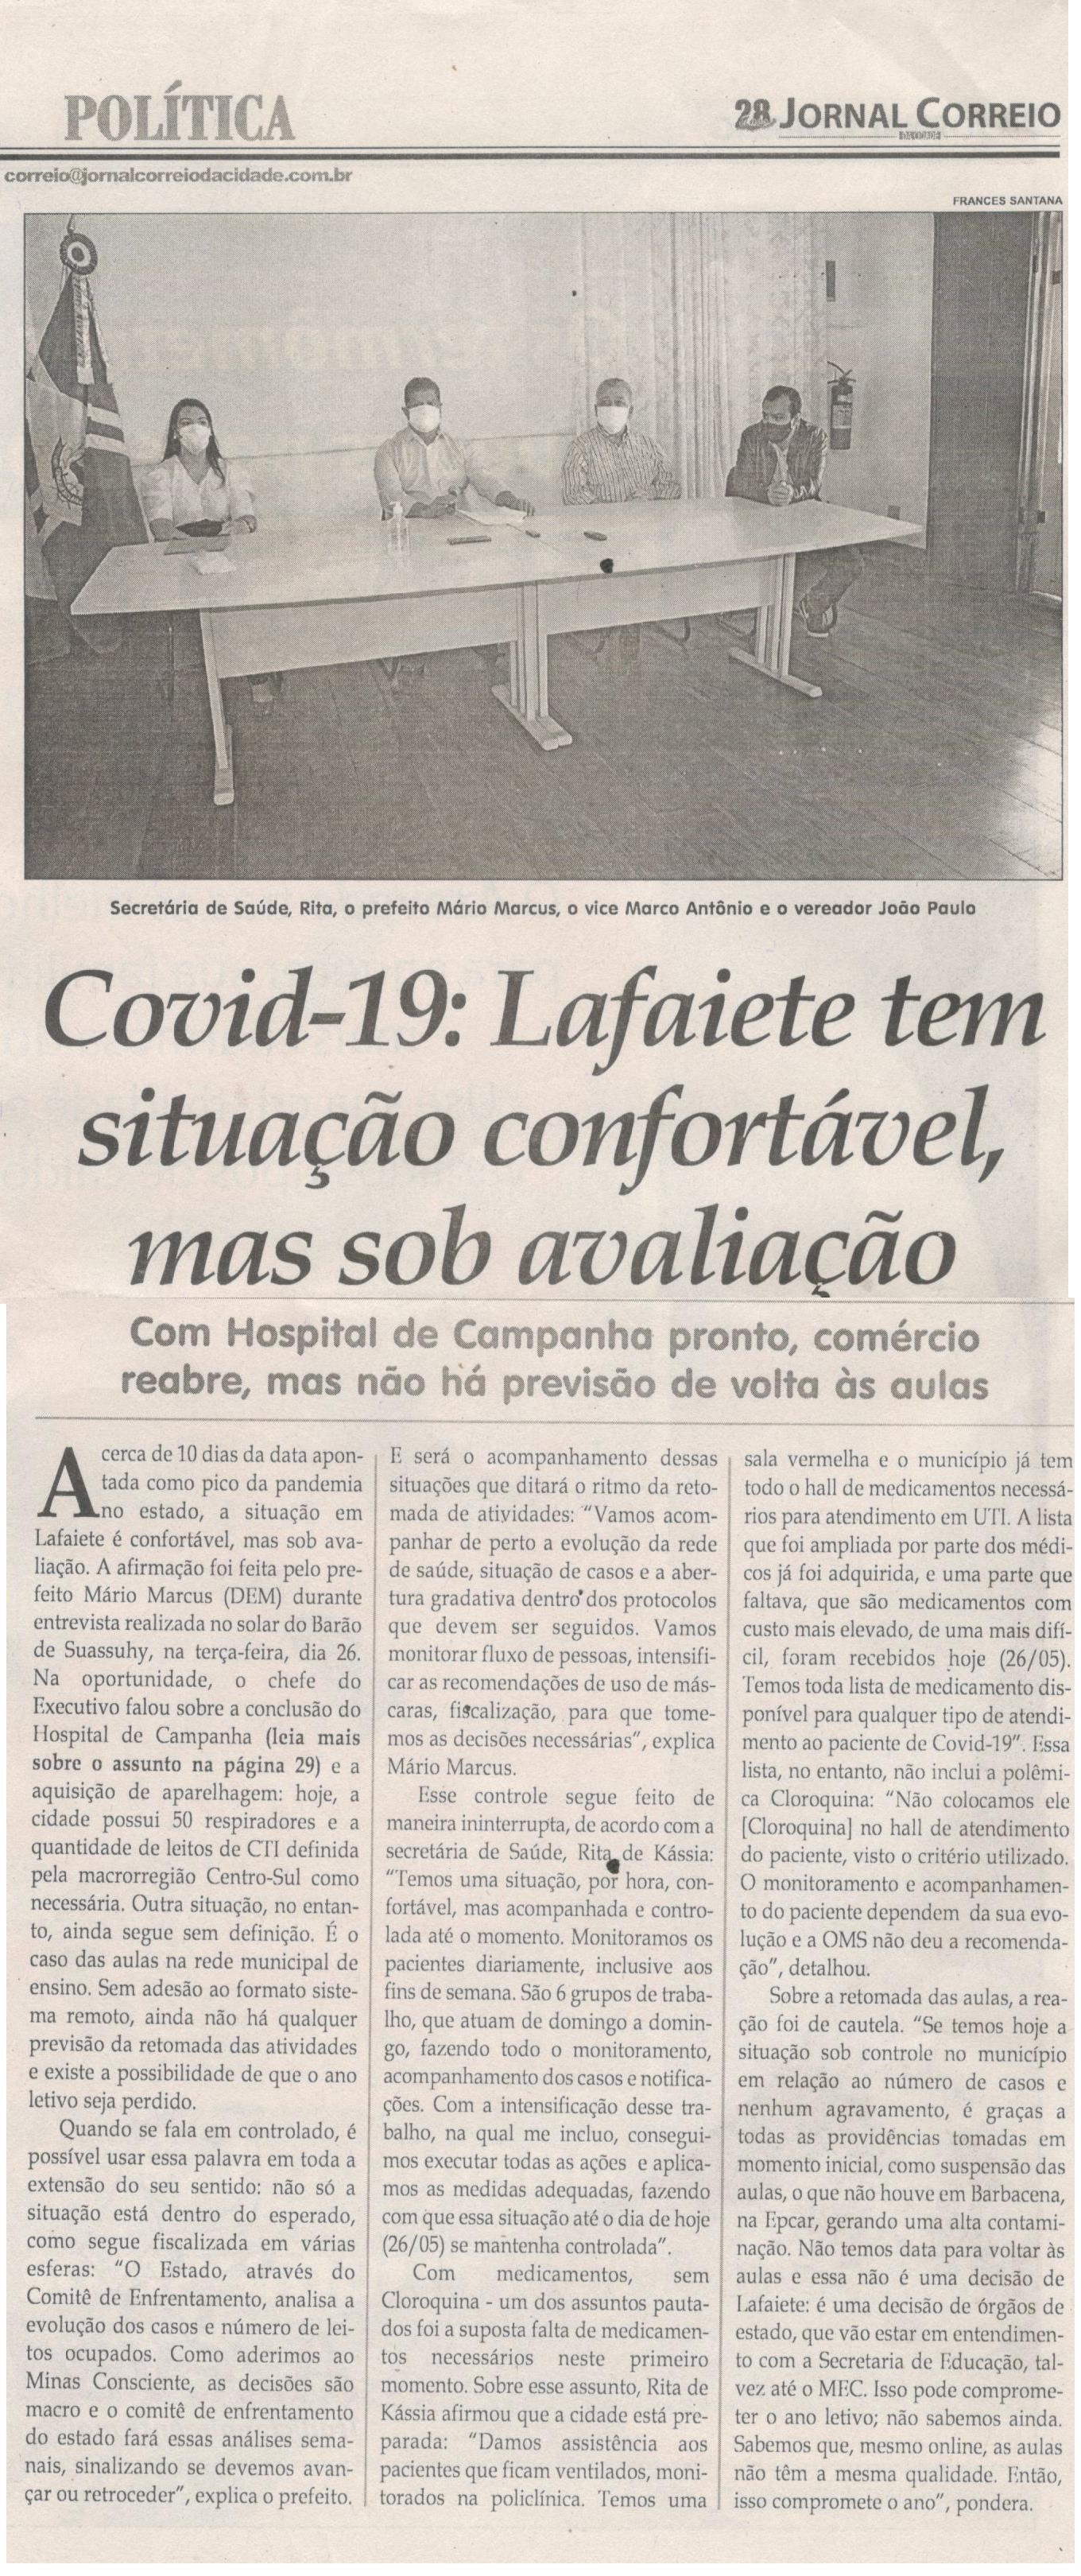 COVID -19 Lafaiete tem situação confortável, mas sob avaliação. Jornal Correio da Cidade, Conselheiro Lafaiete, 13 mai. 2020 a 05 jun. 2020, 1527ª ed., Caderno Política, p. 6.